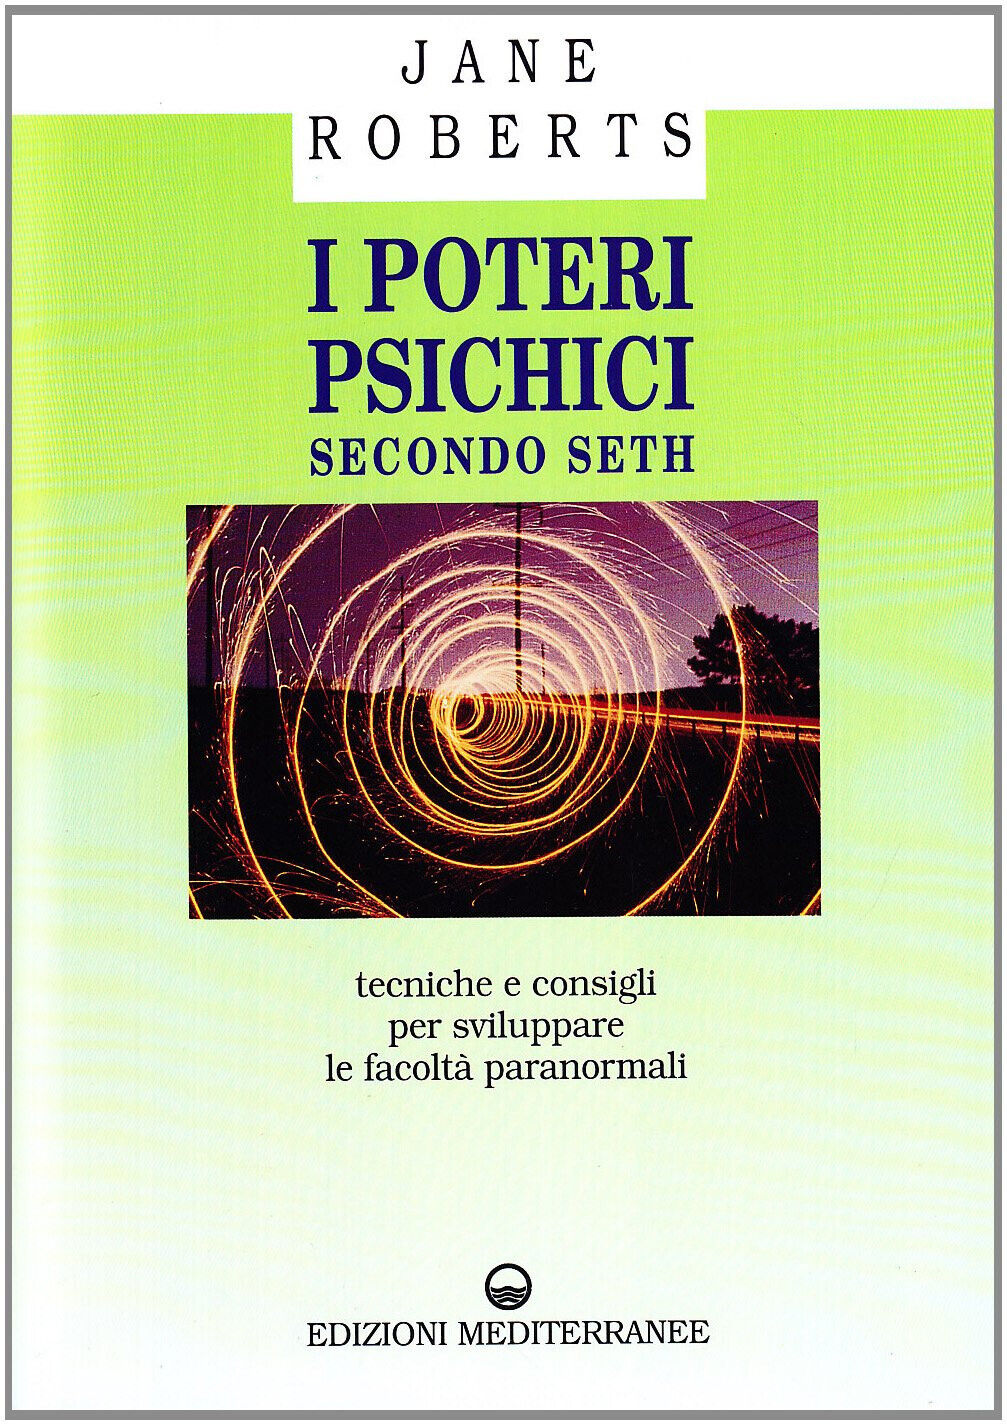 I poteri psichici secondo Seth - Jane Roberts - Edizioni Mediterranee, 1996 libro usato